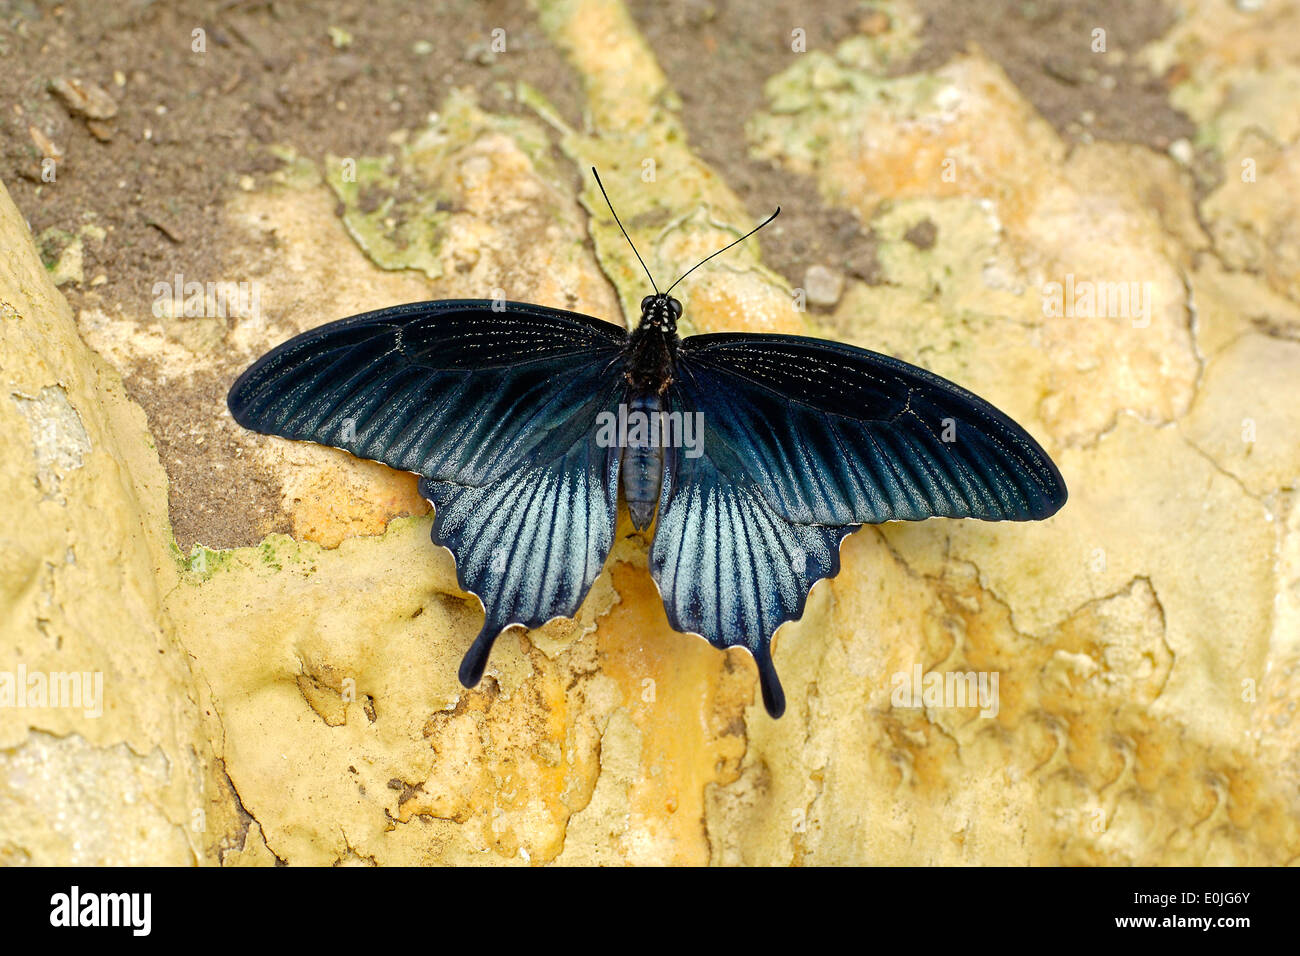 Kraehen Schwalbenschwanz, Papilio Bianor, der chinesische Pfau gibt einen Mittelweg, Großformat Schwalbenschwanz Schmetterling aus Ostasien Stockfoto